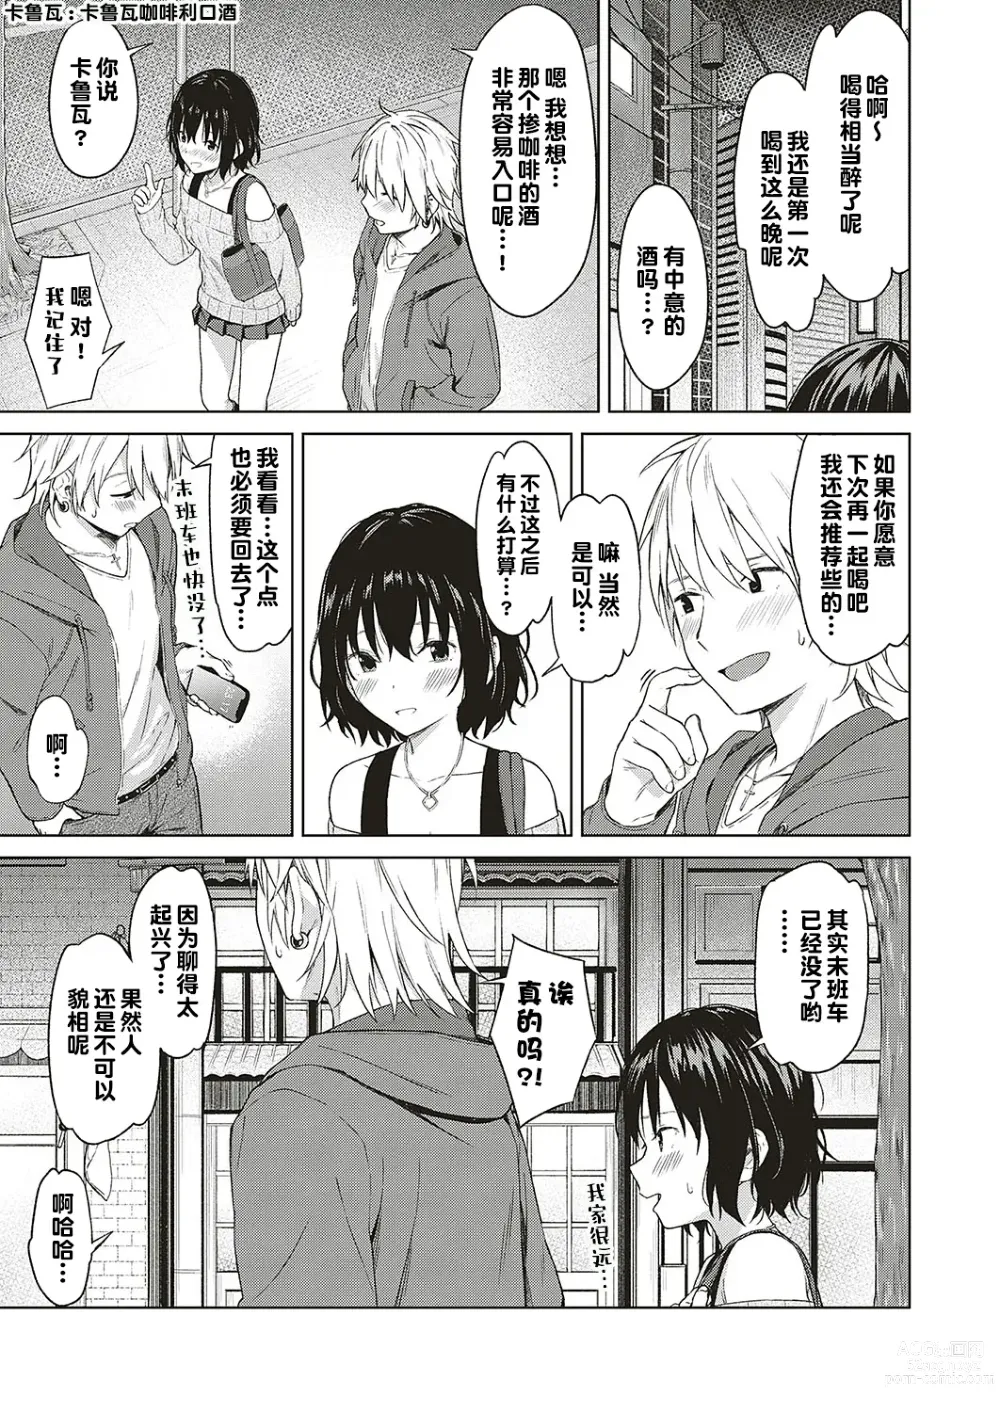 Page 7 of manga Analogy